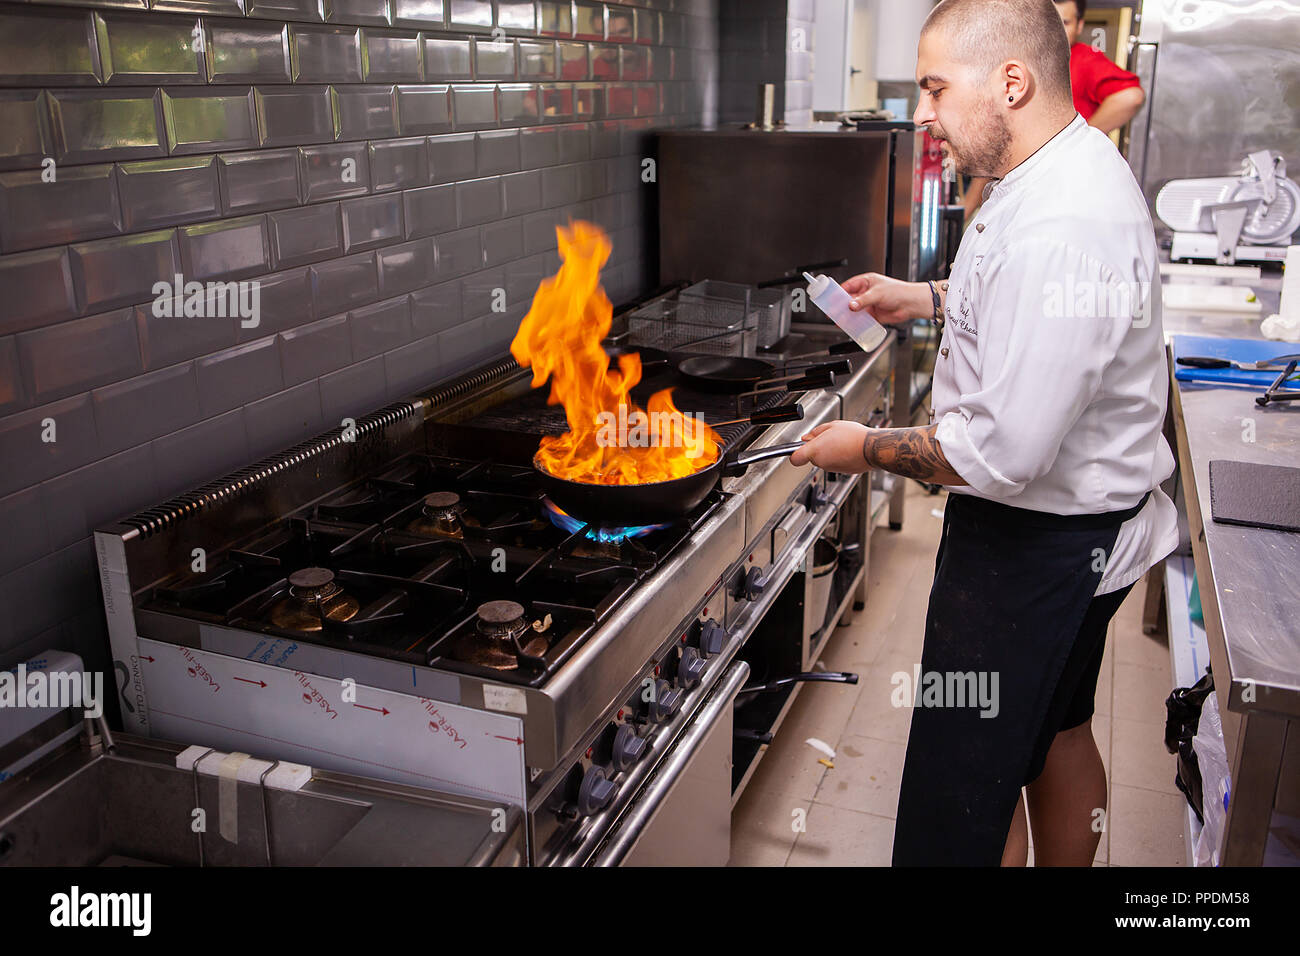 Männer kochen, flambiert seafood restaurant am Herd in der Küche. Leckeres Essen Stockfoto